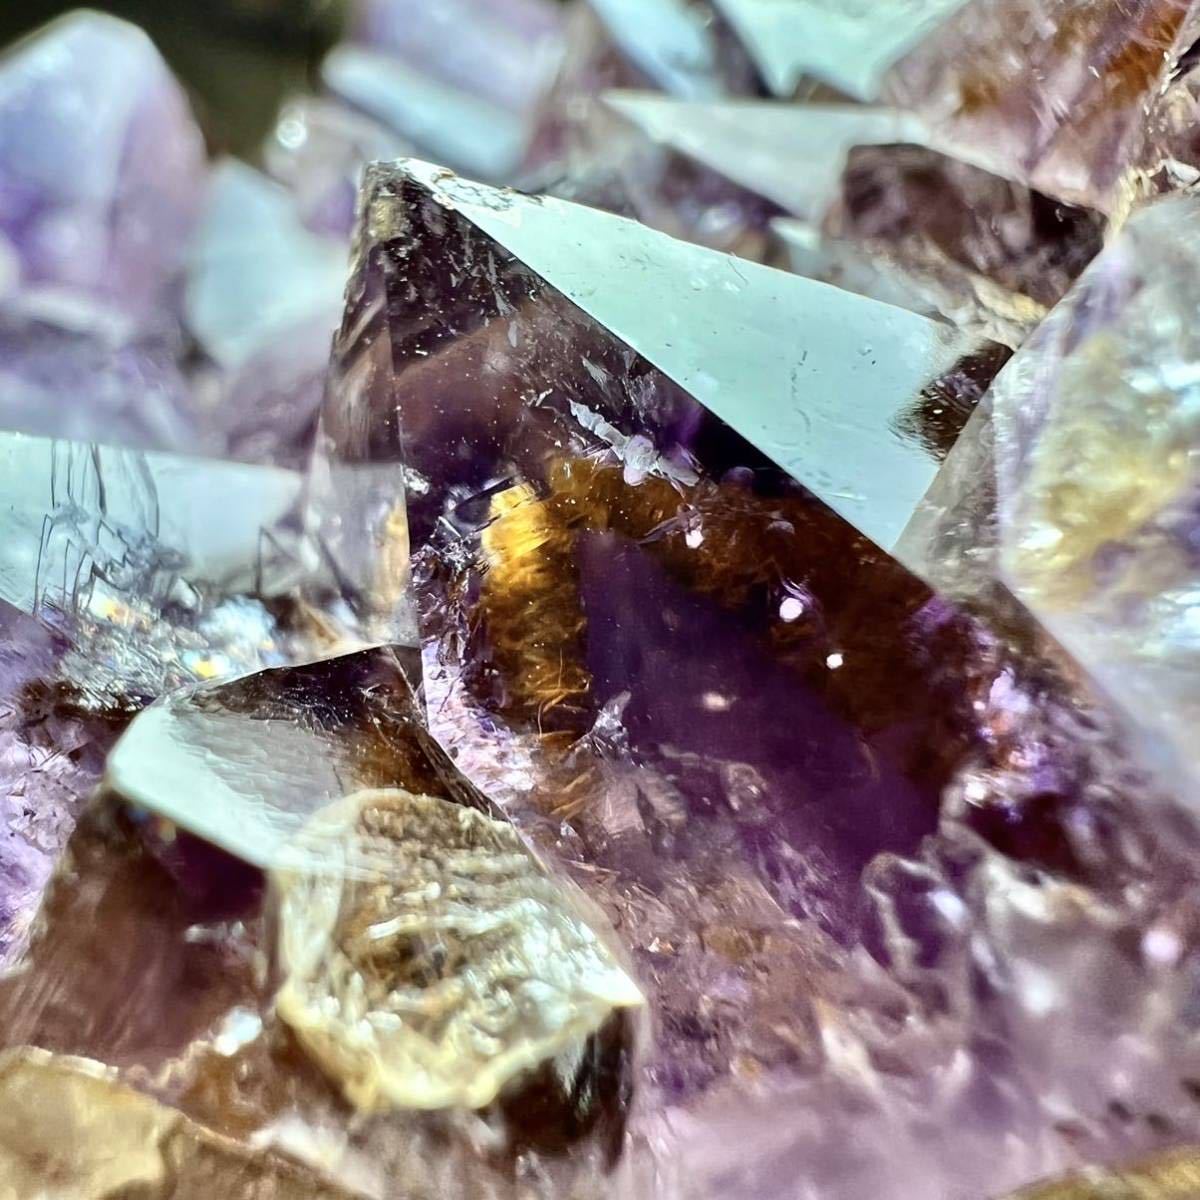 【特大】約2.2kg ブラジル リオグランデドスル州 アメティスタドスル産 アメジスト カコクセナイト クラスター 紫水晶 虹 天然石 原石 鉱物